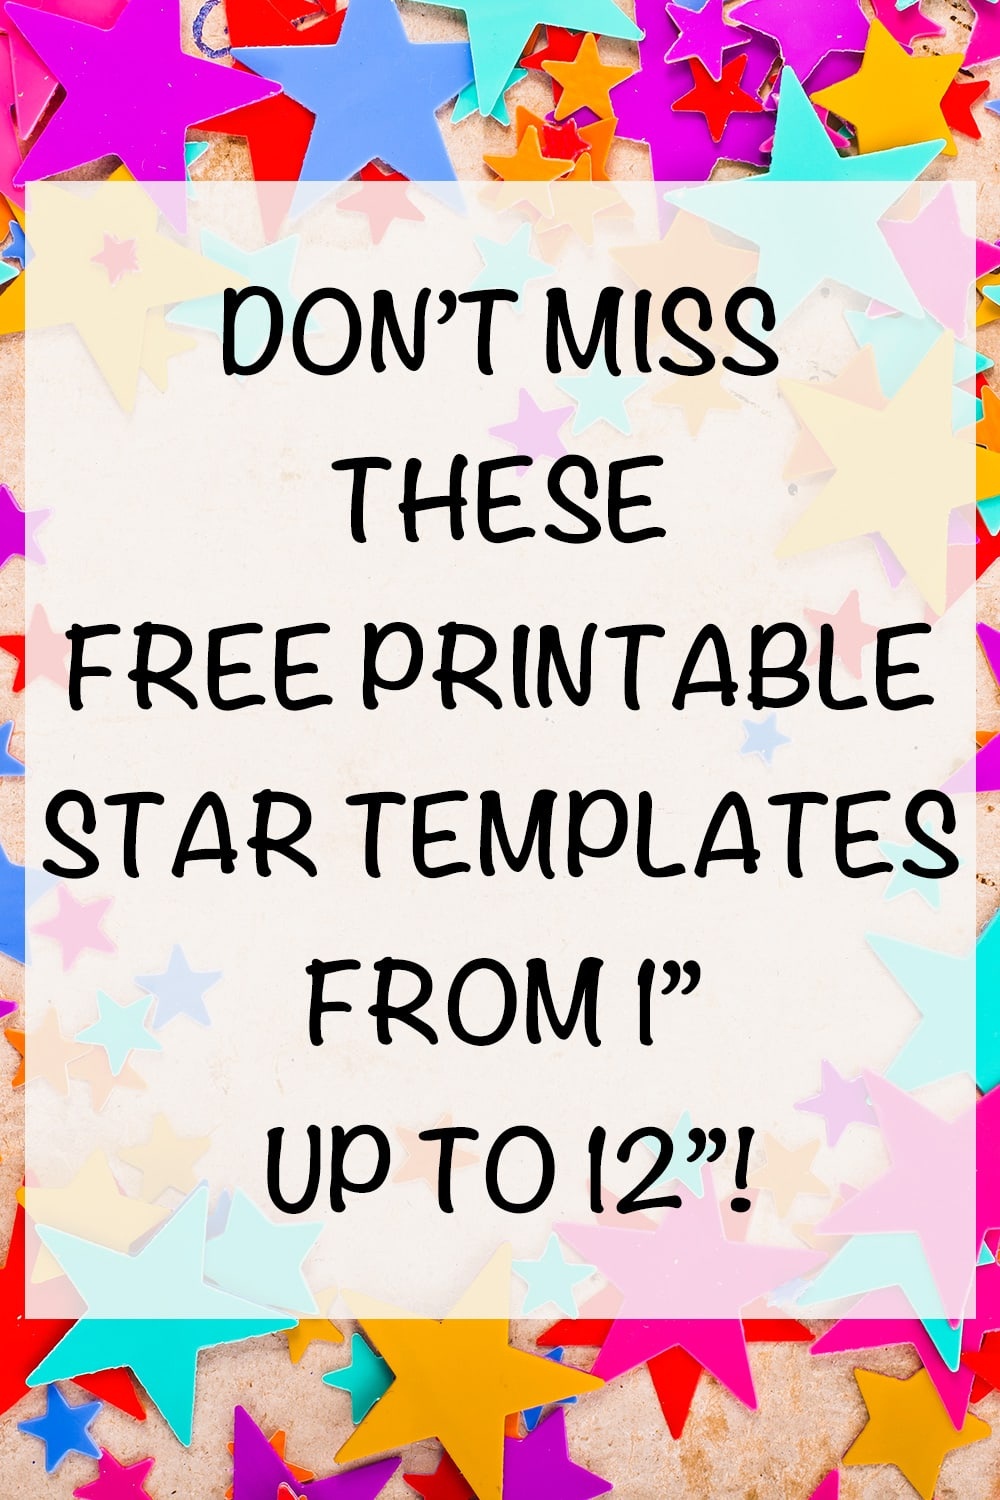 Free Printable Star Templates - The Artisan Life - Free Printable Stars